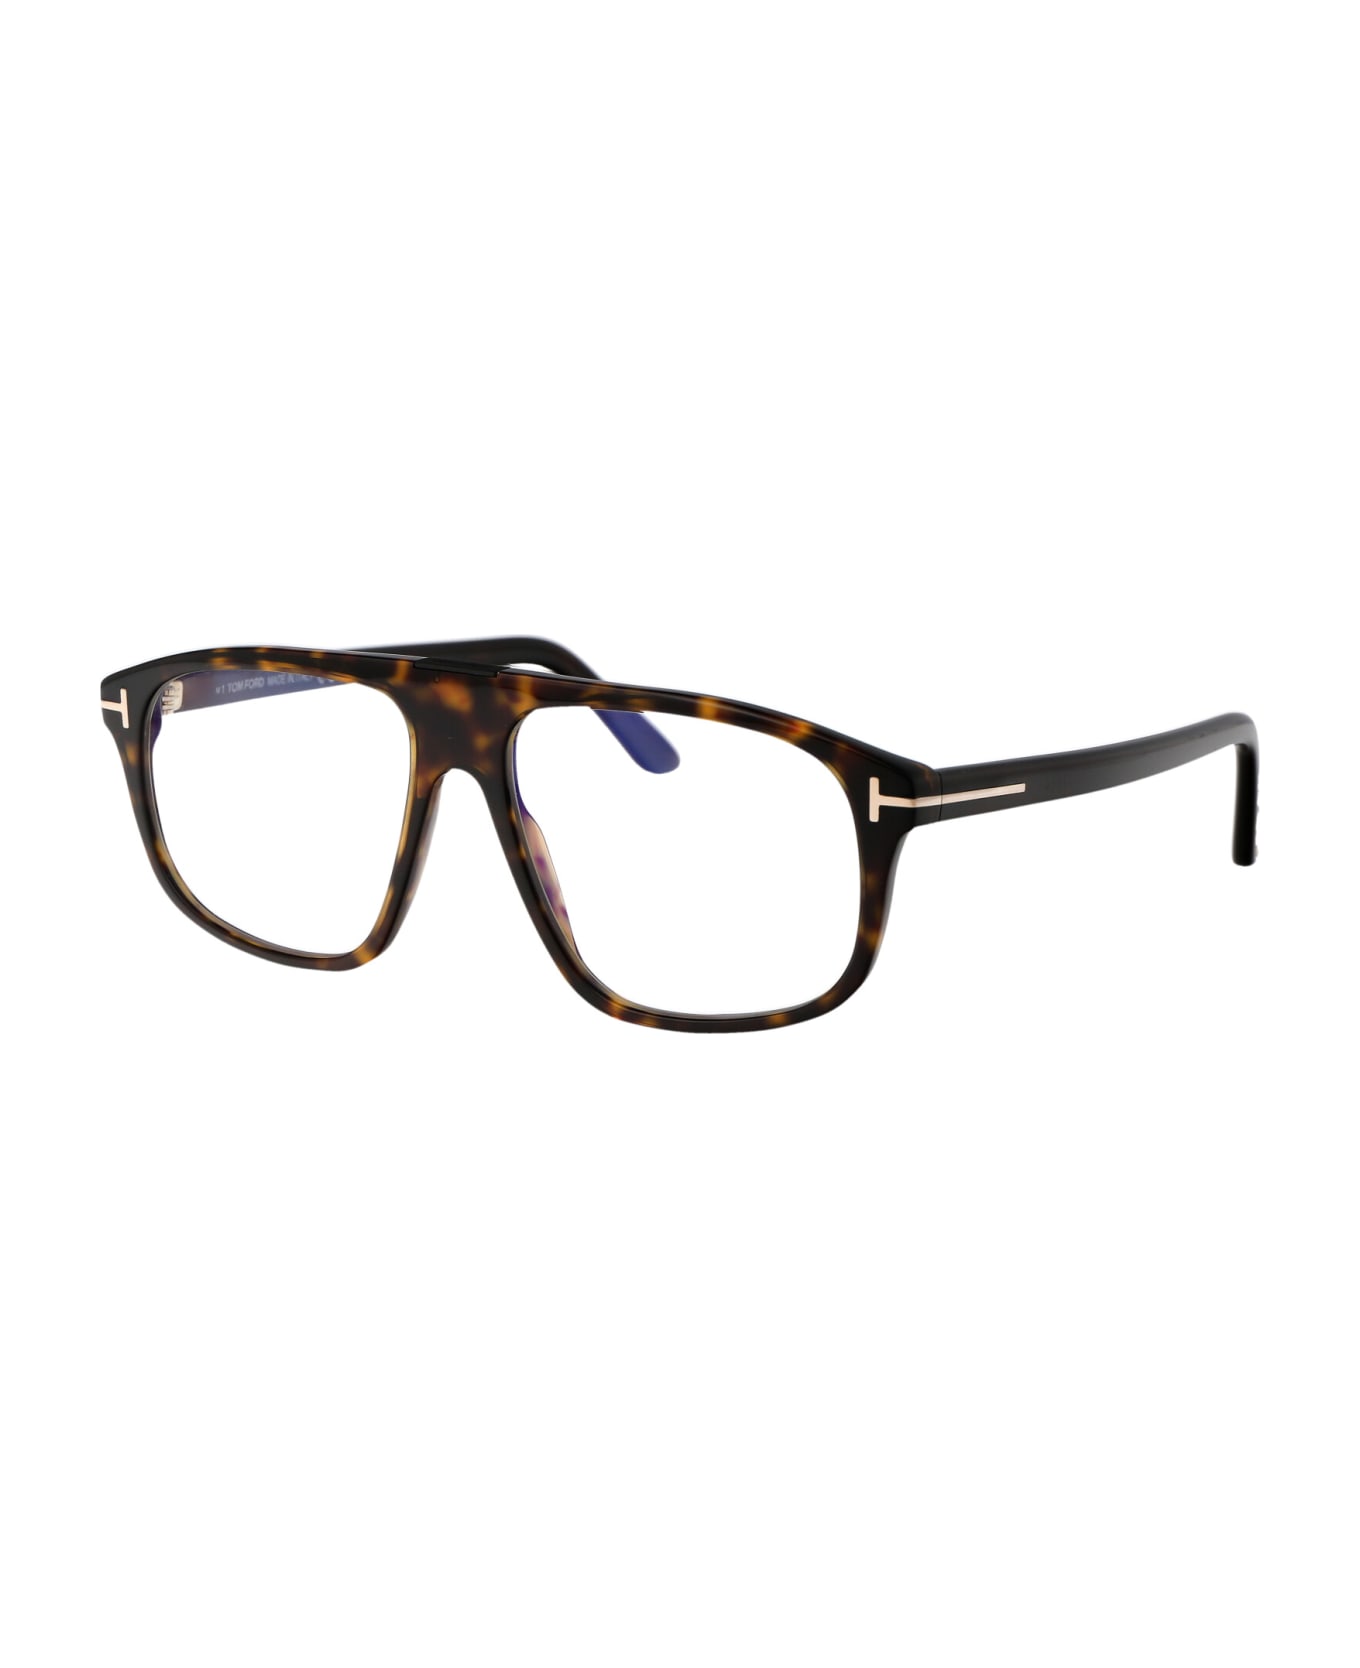 Tom Ford Eyewear Ft5901-b Glasses - 052 Avana Scura アイウェア